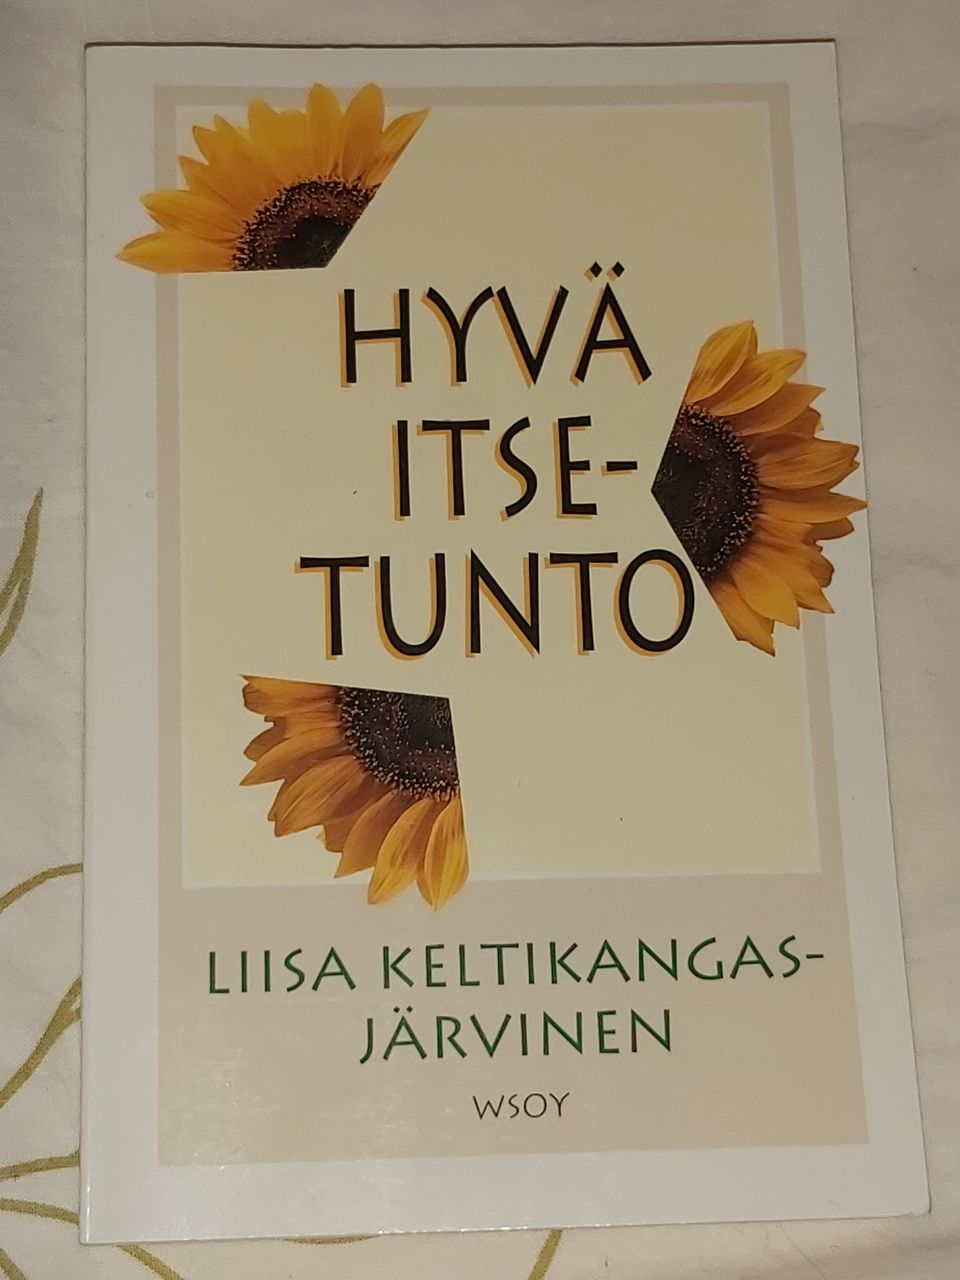 WSOY, Liisa Kelttikangas-Järvinen, Hyvä itsetunto